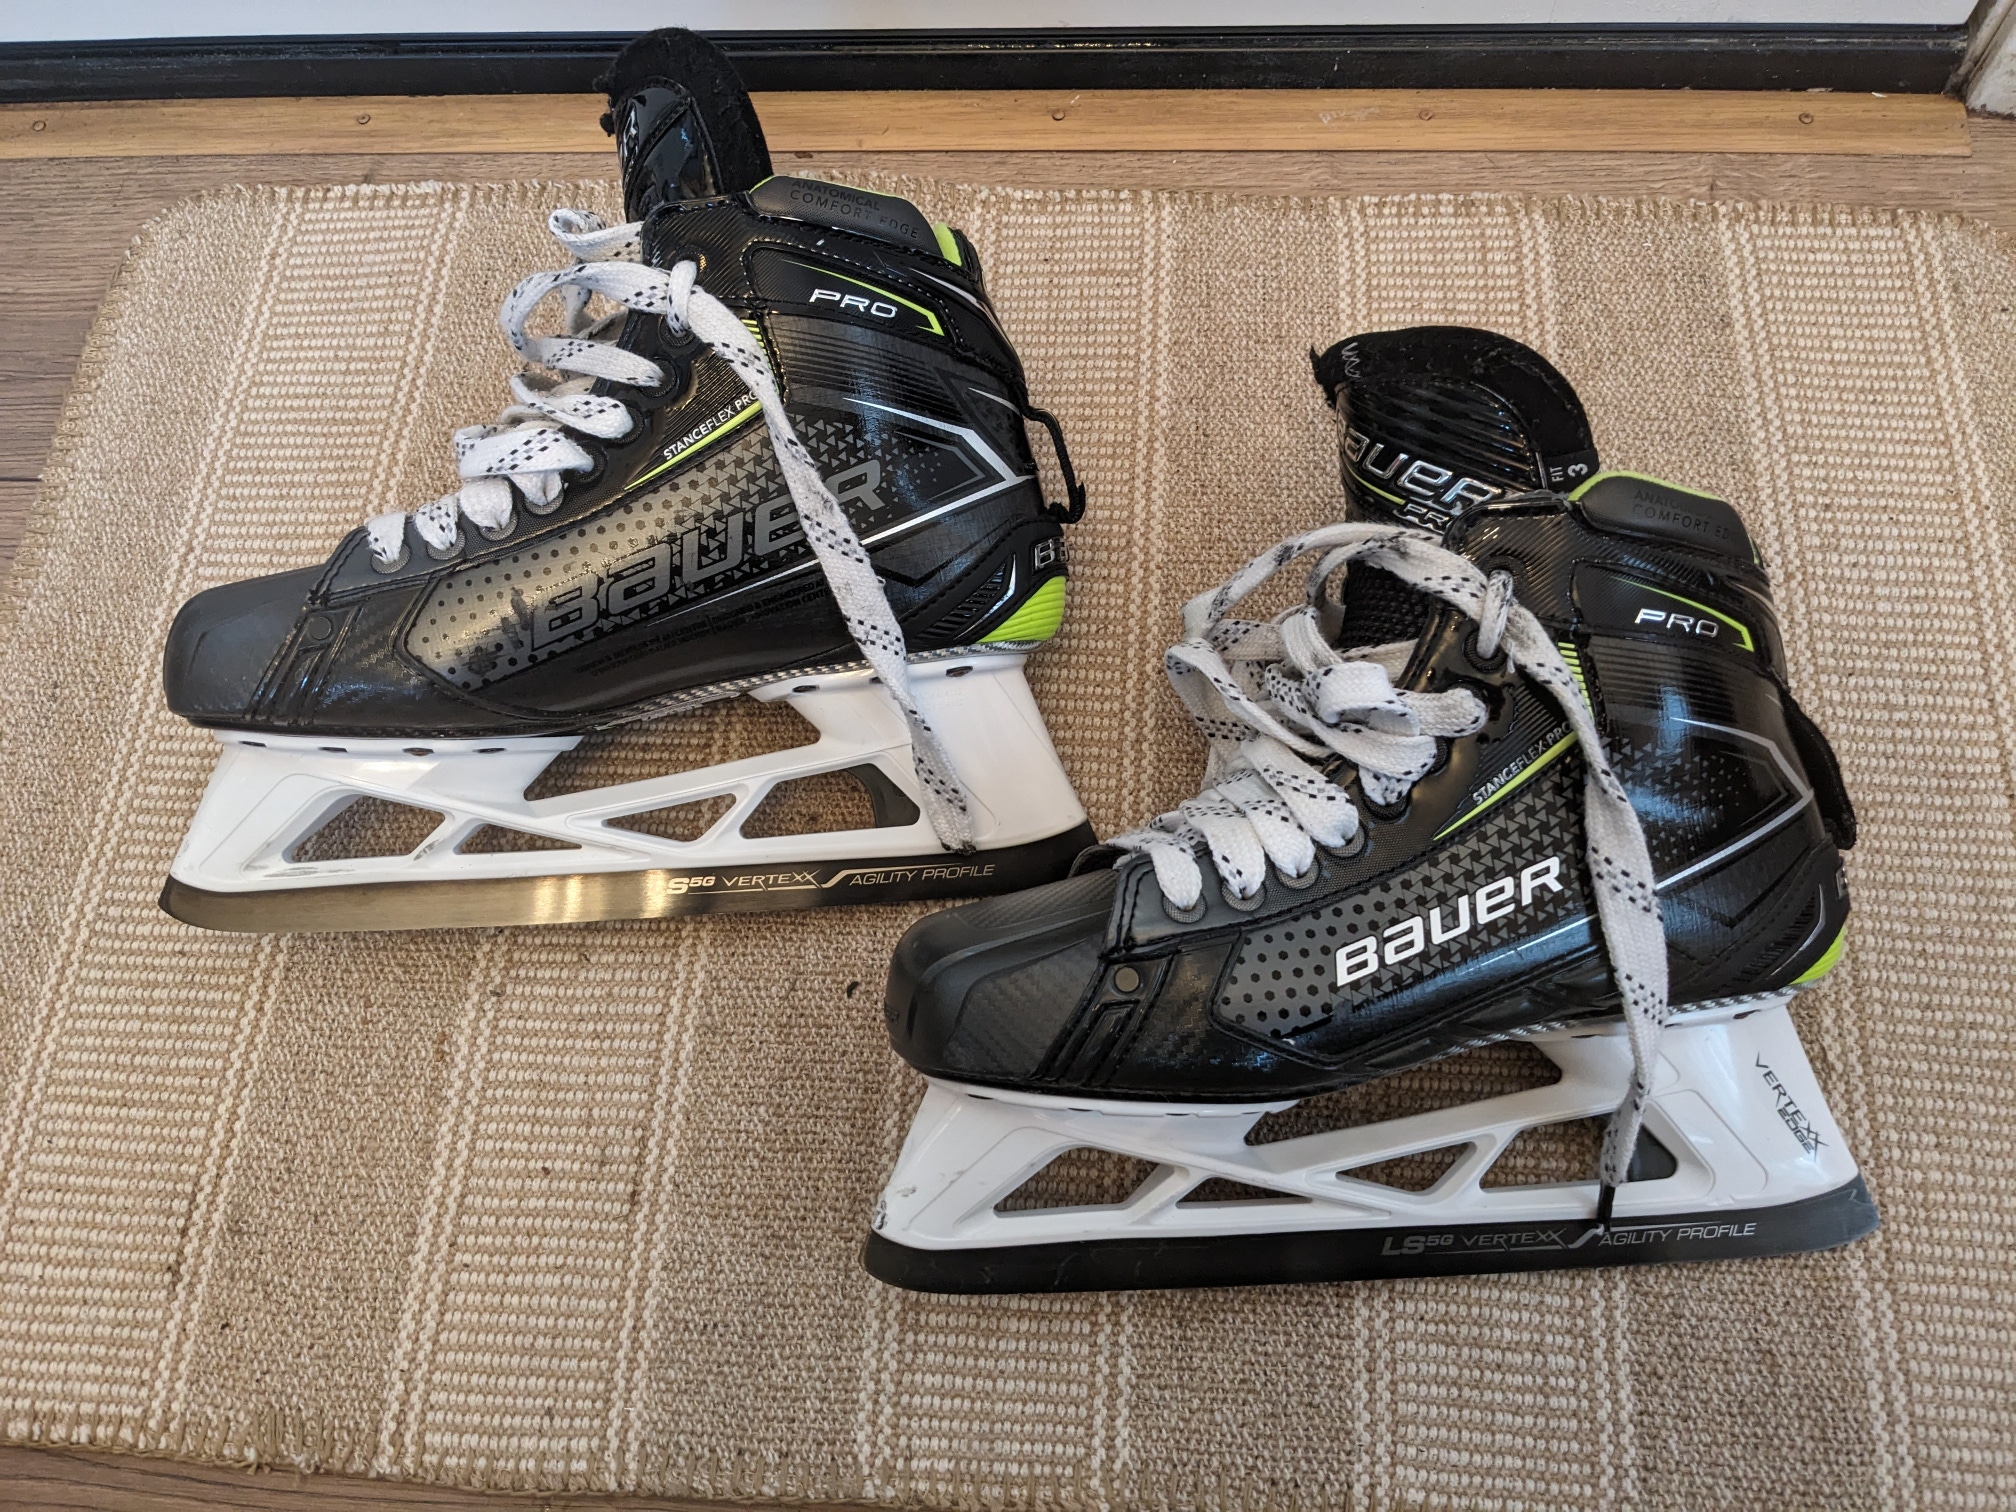 Senior Used Bauer Pro Hockey Goalie Skates - Size 8